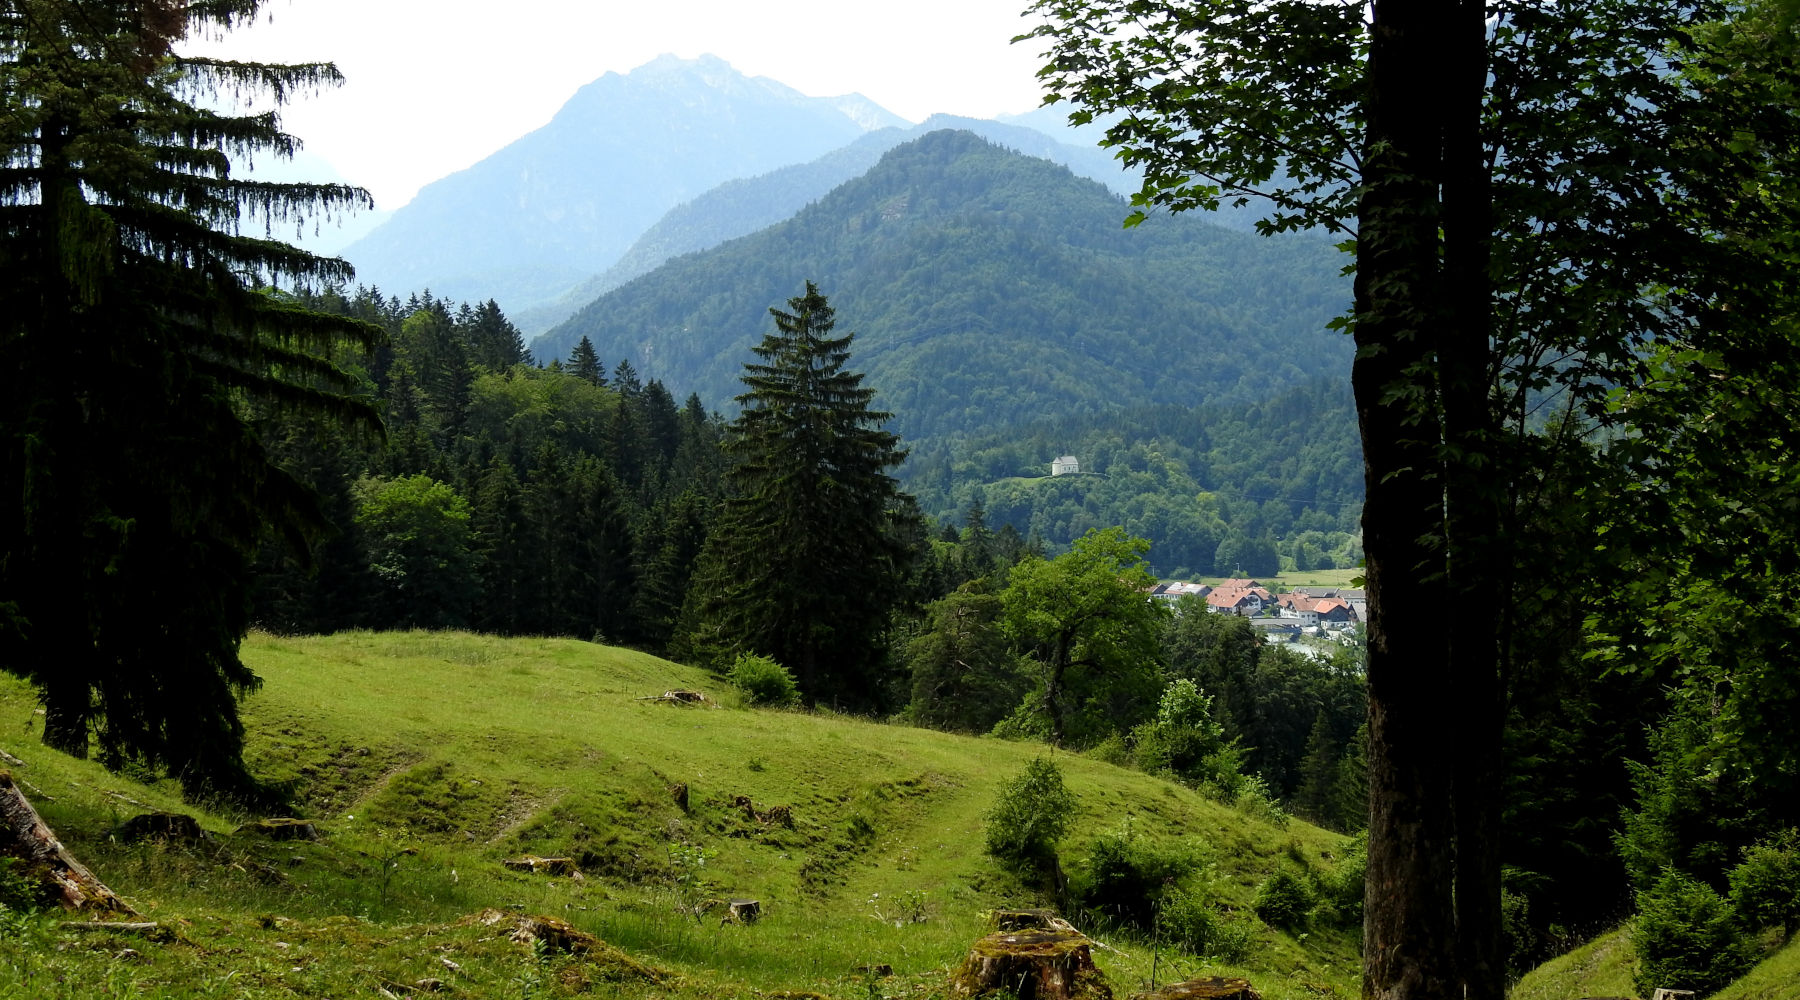 Badersee-Blog: Spitzenwanderweg Trail Section 1 - From Murnau to Eschenlohe